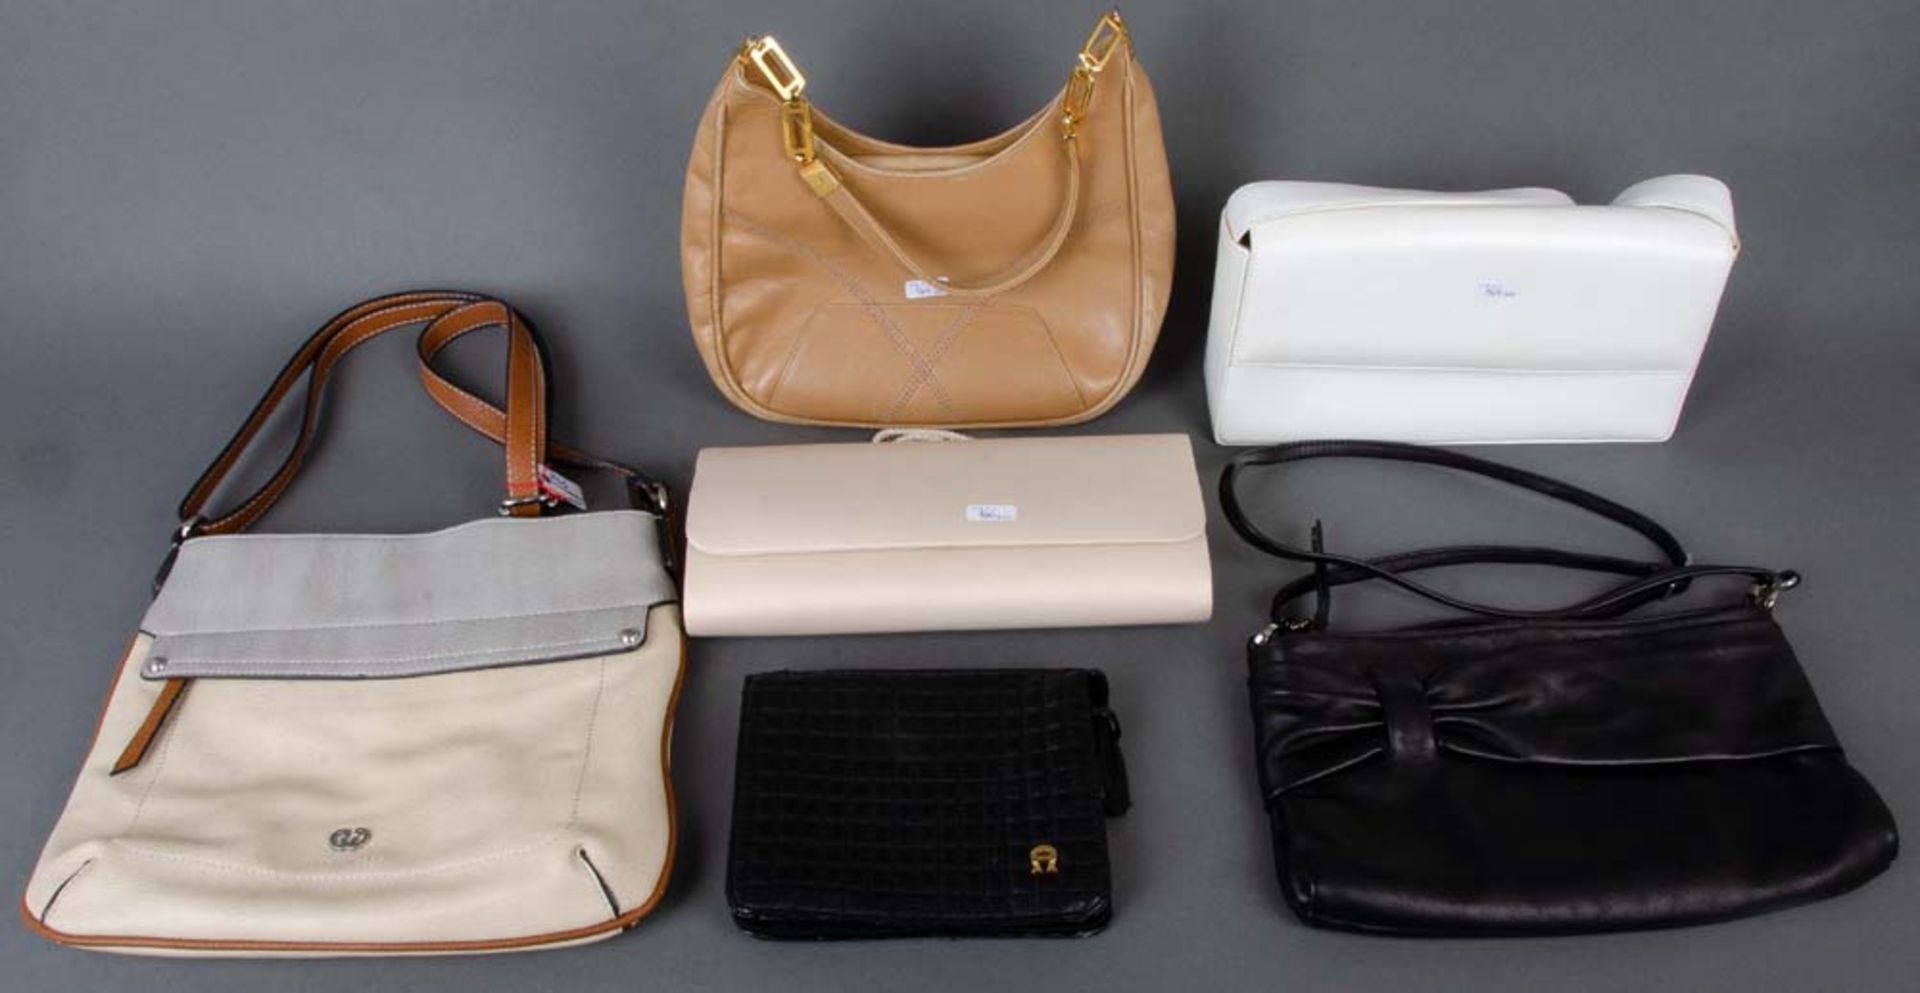 Sechs neuzeitliche Damenhandtaschen, u.a. Marke „Aigner“, „Calamita“, „Gerry Weber“.